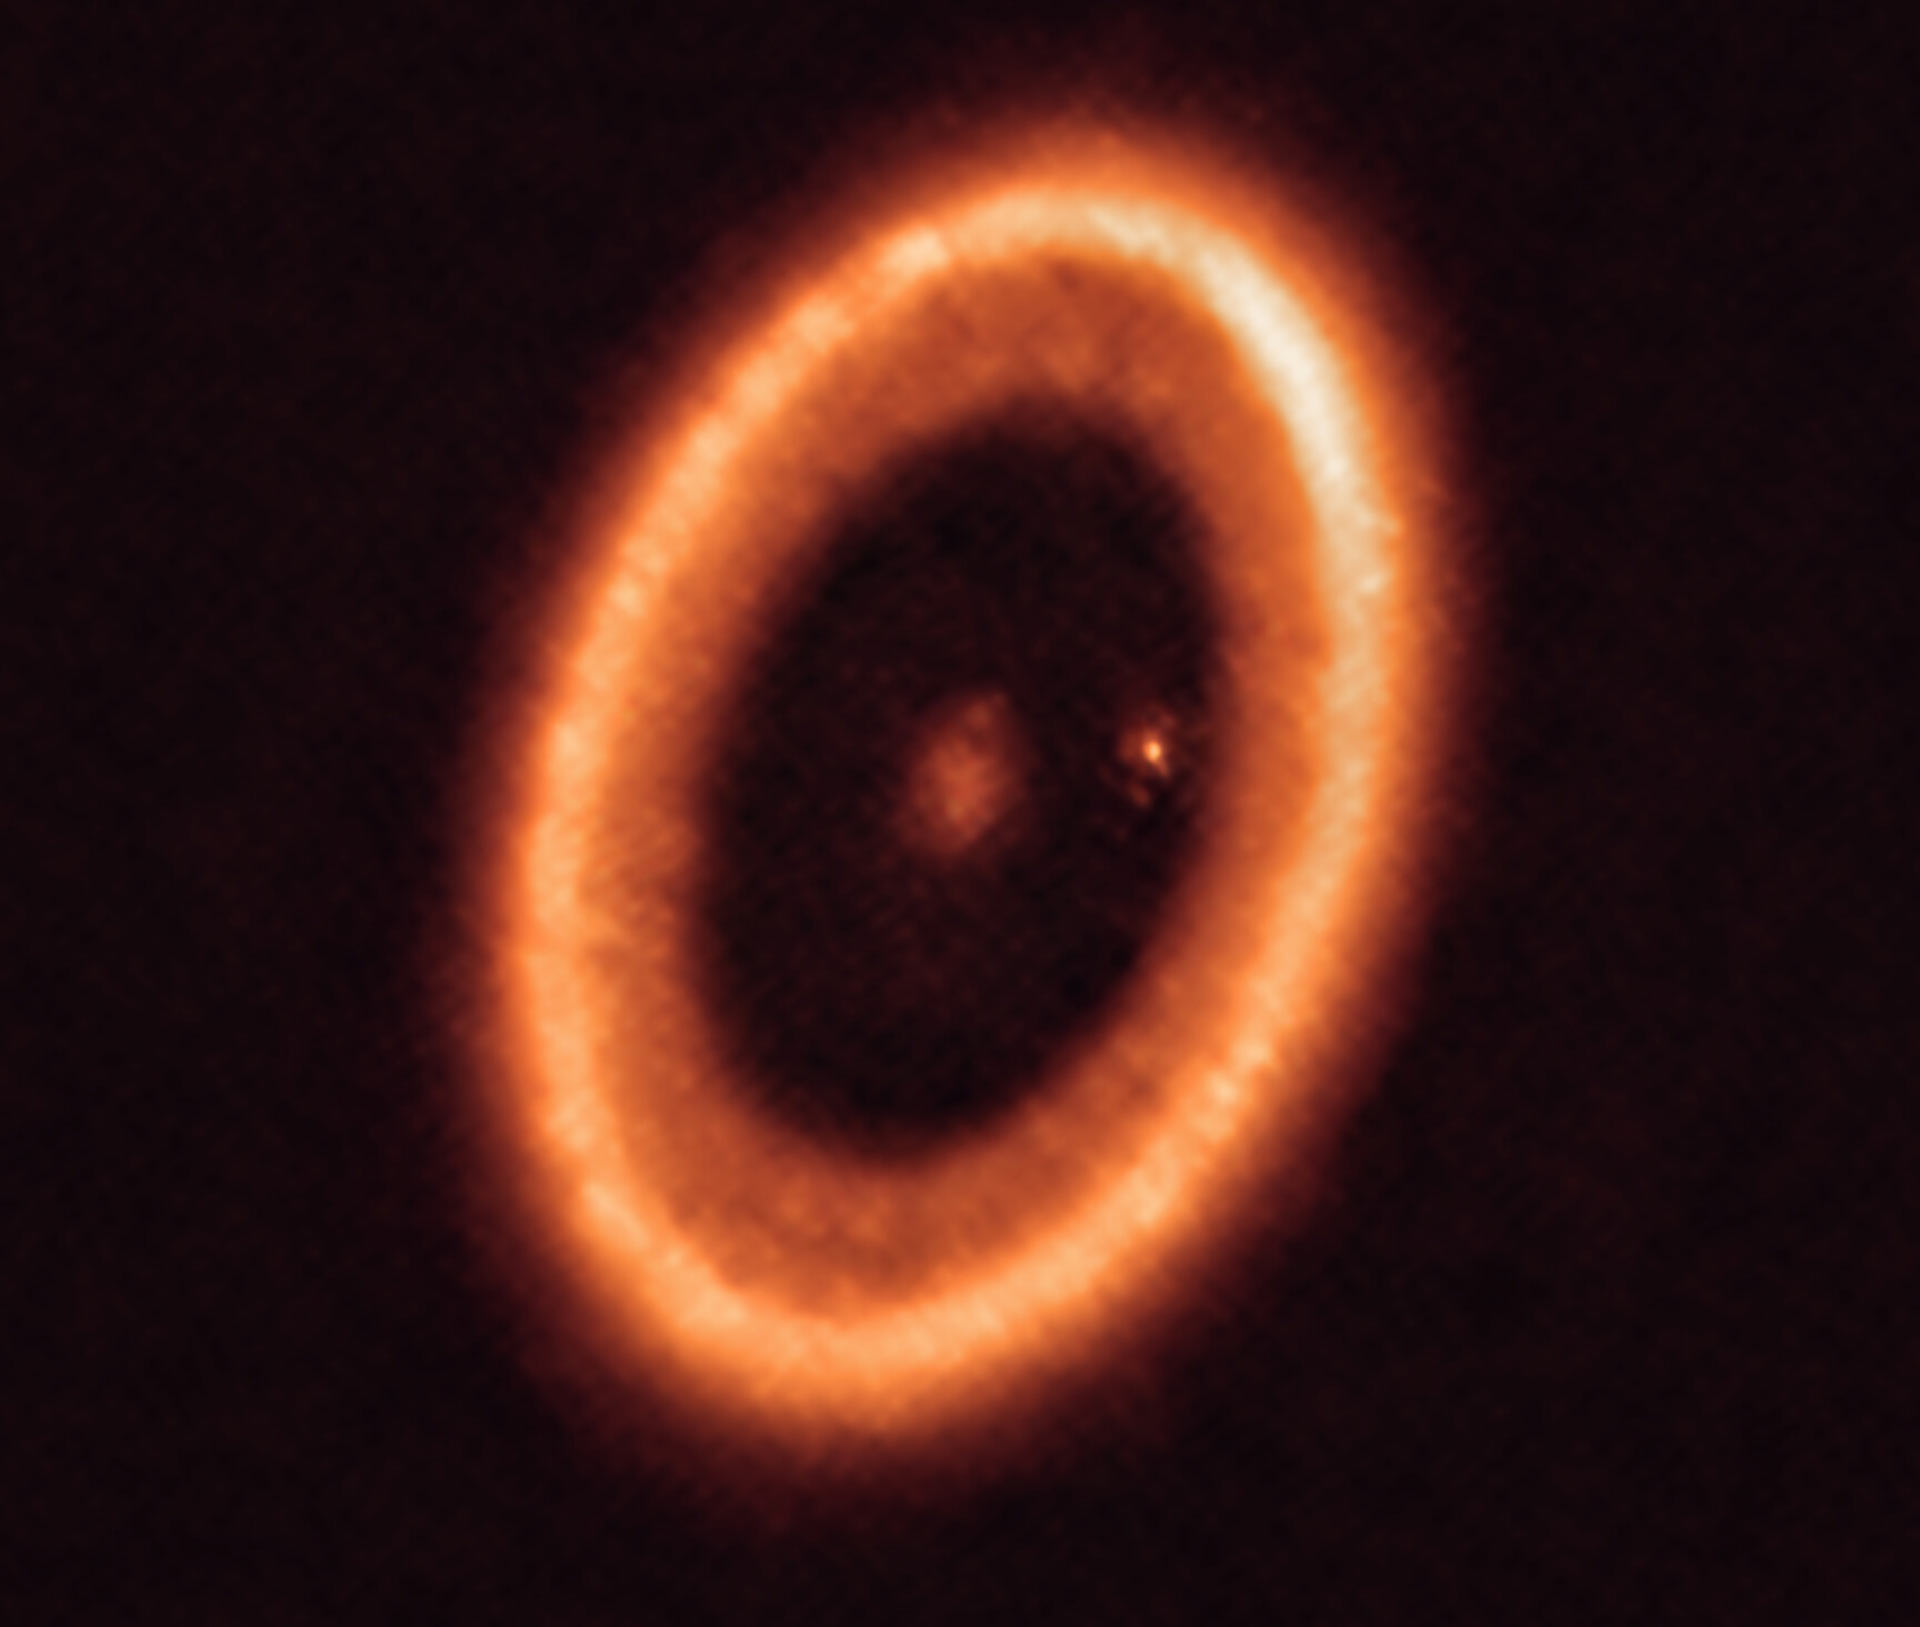 恒星PDS70（中心）和行星PDS 70c（恒星右侧的点），被一个圆盘包围。图片来源：ALMA /Benisty等